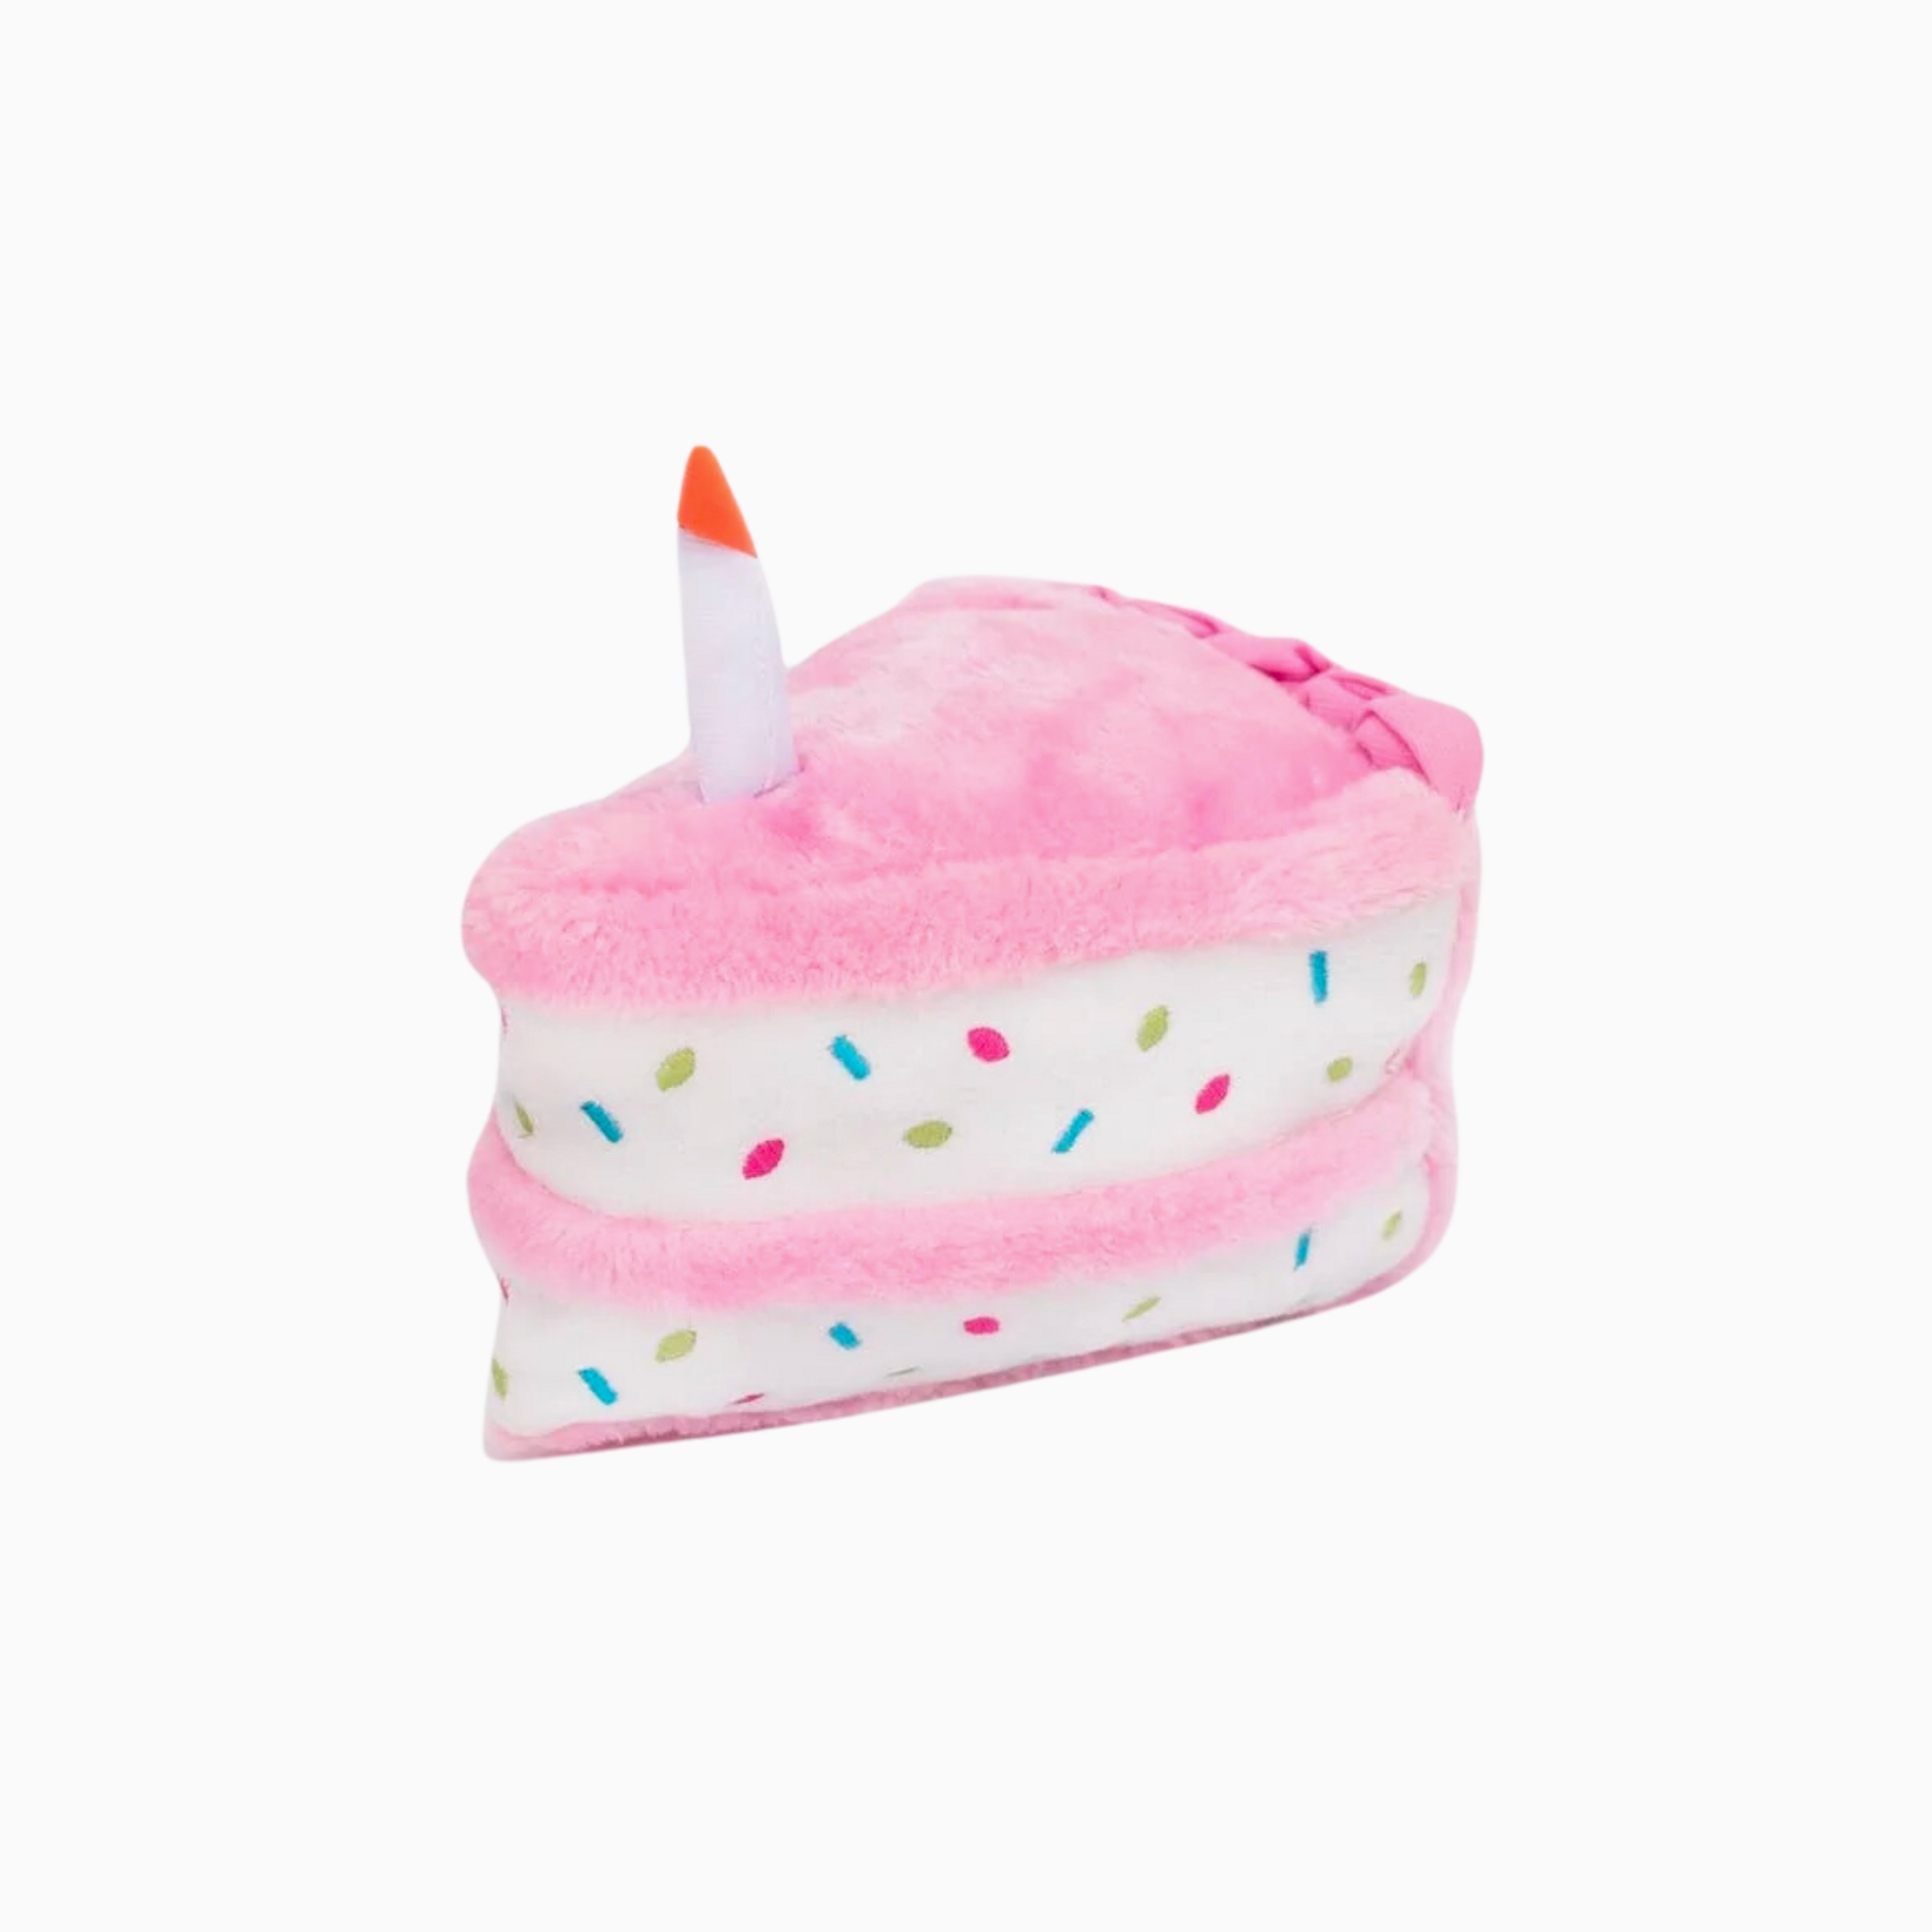 Birthday Cake Toy